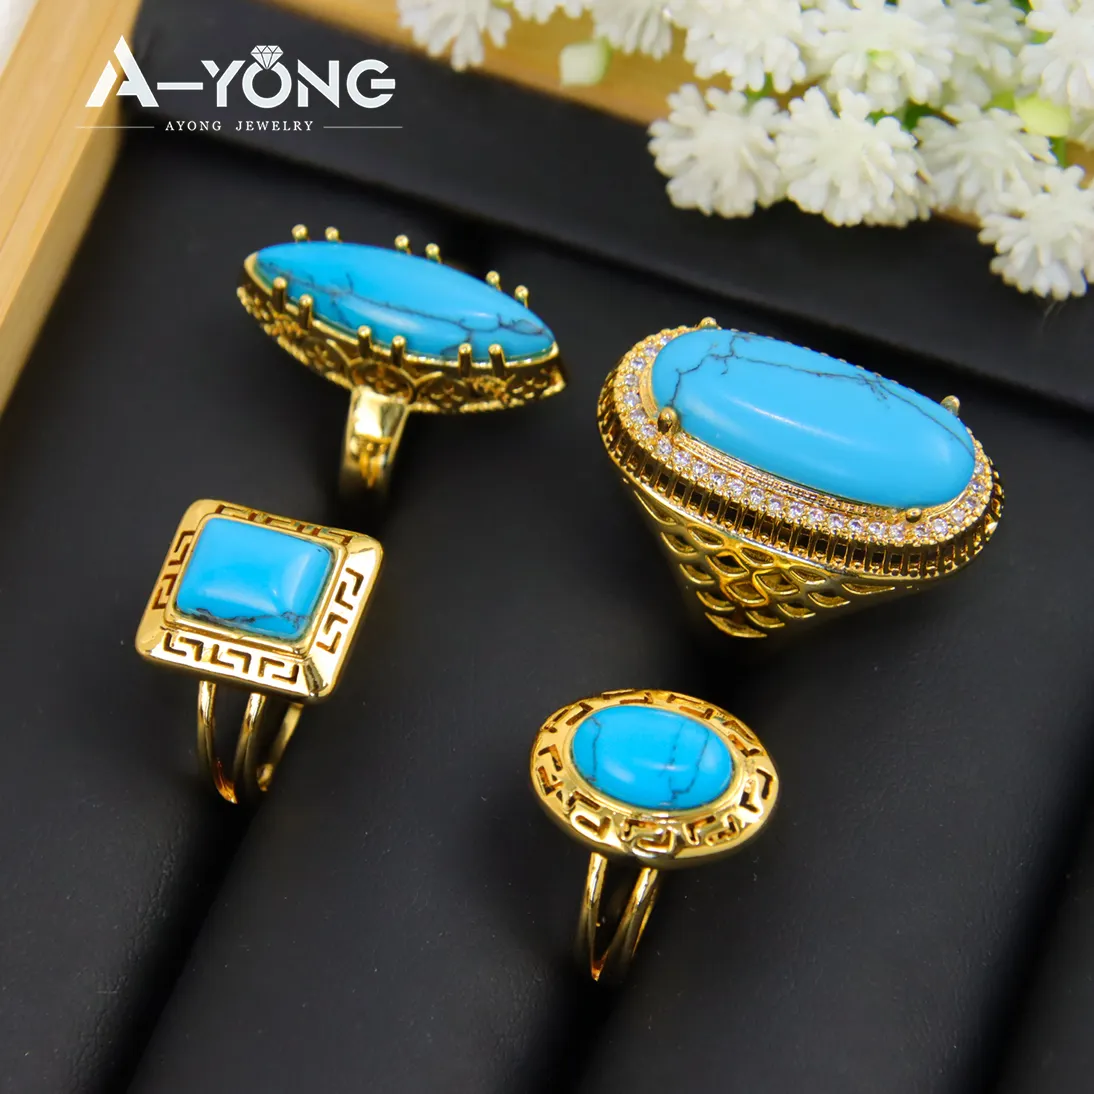 Derniers modèles de bijoux Ayong Bagues carrées en laiton plaqué or 18 carats Bagues turquoise pour femmes